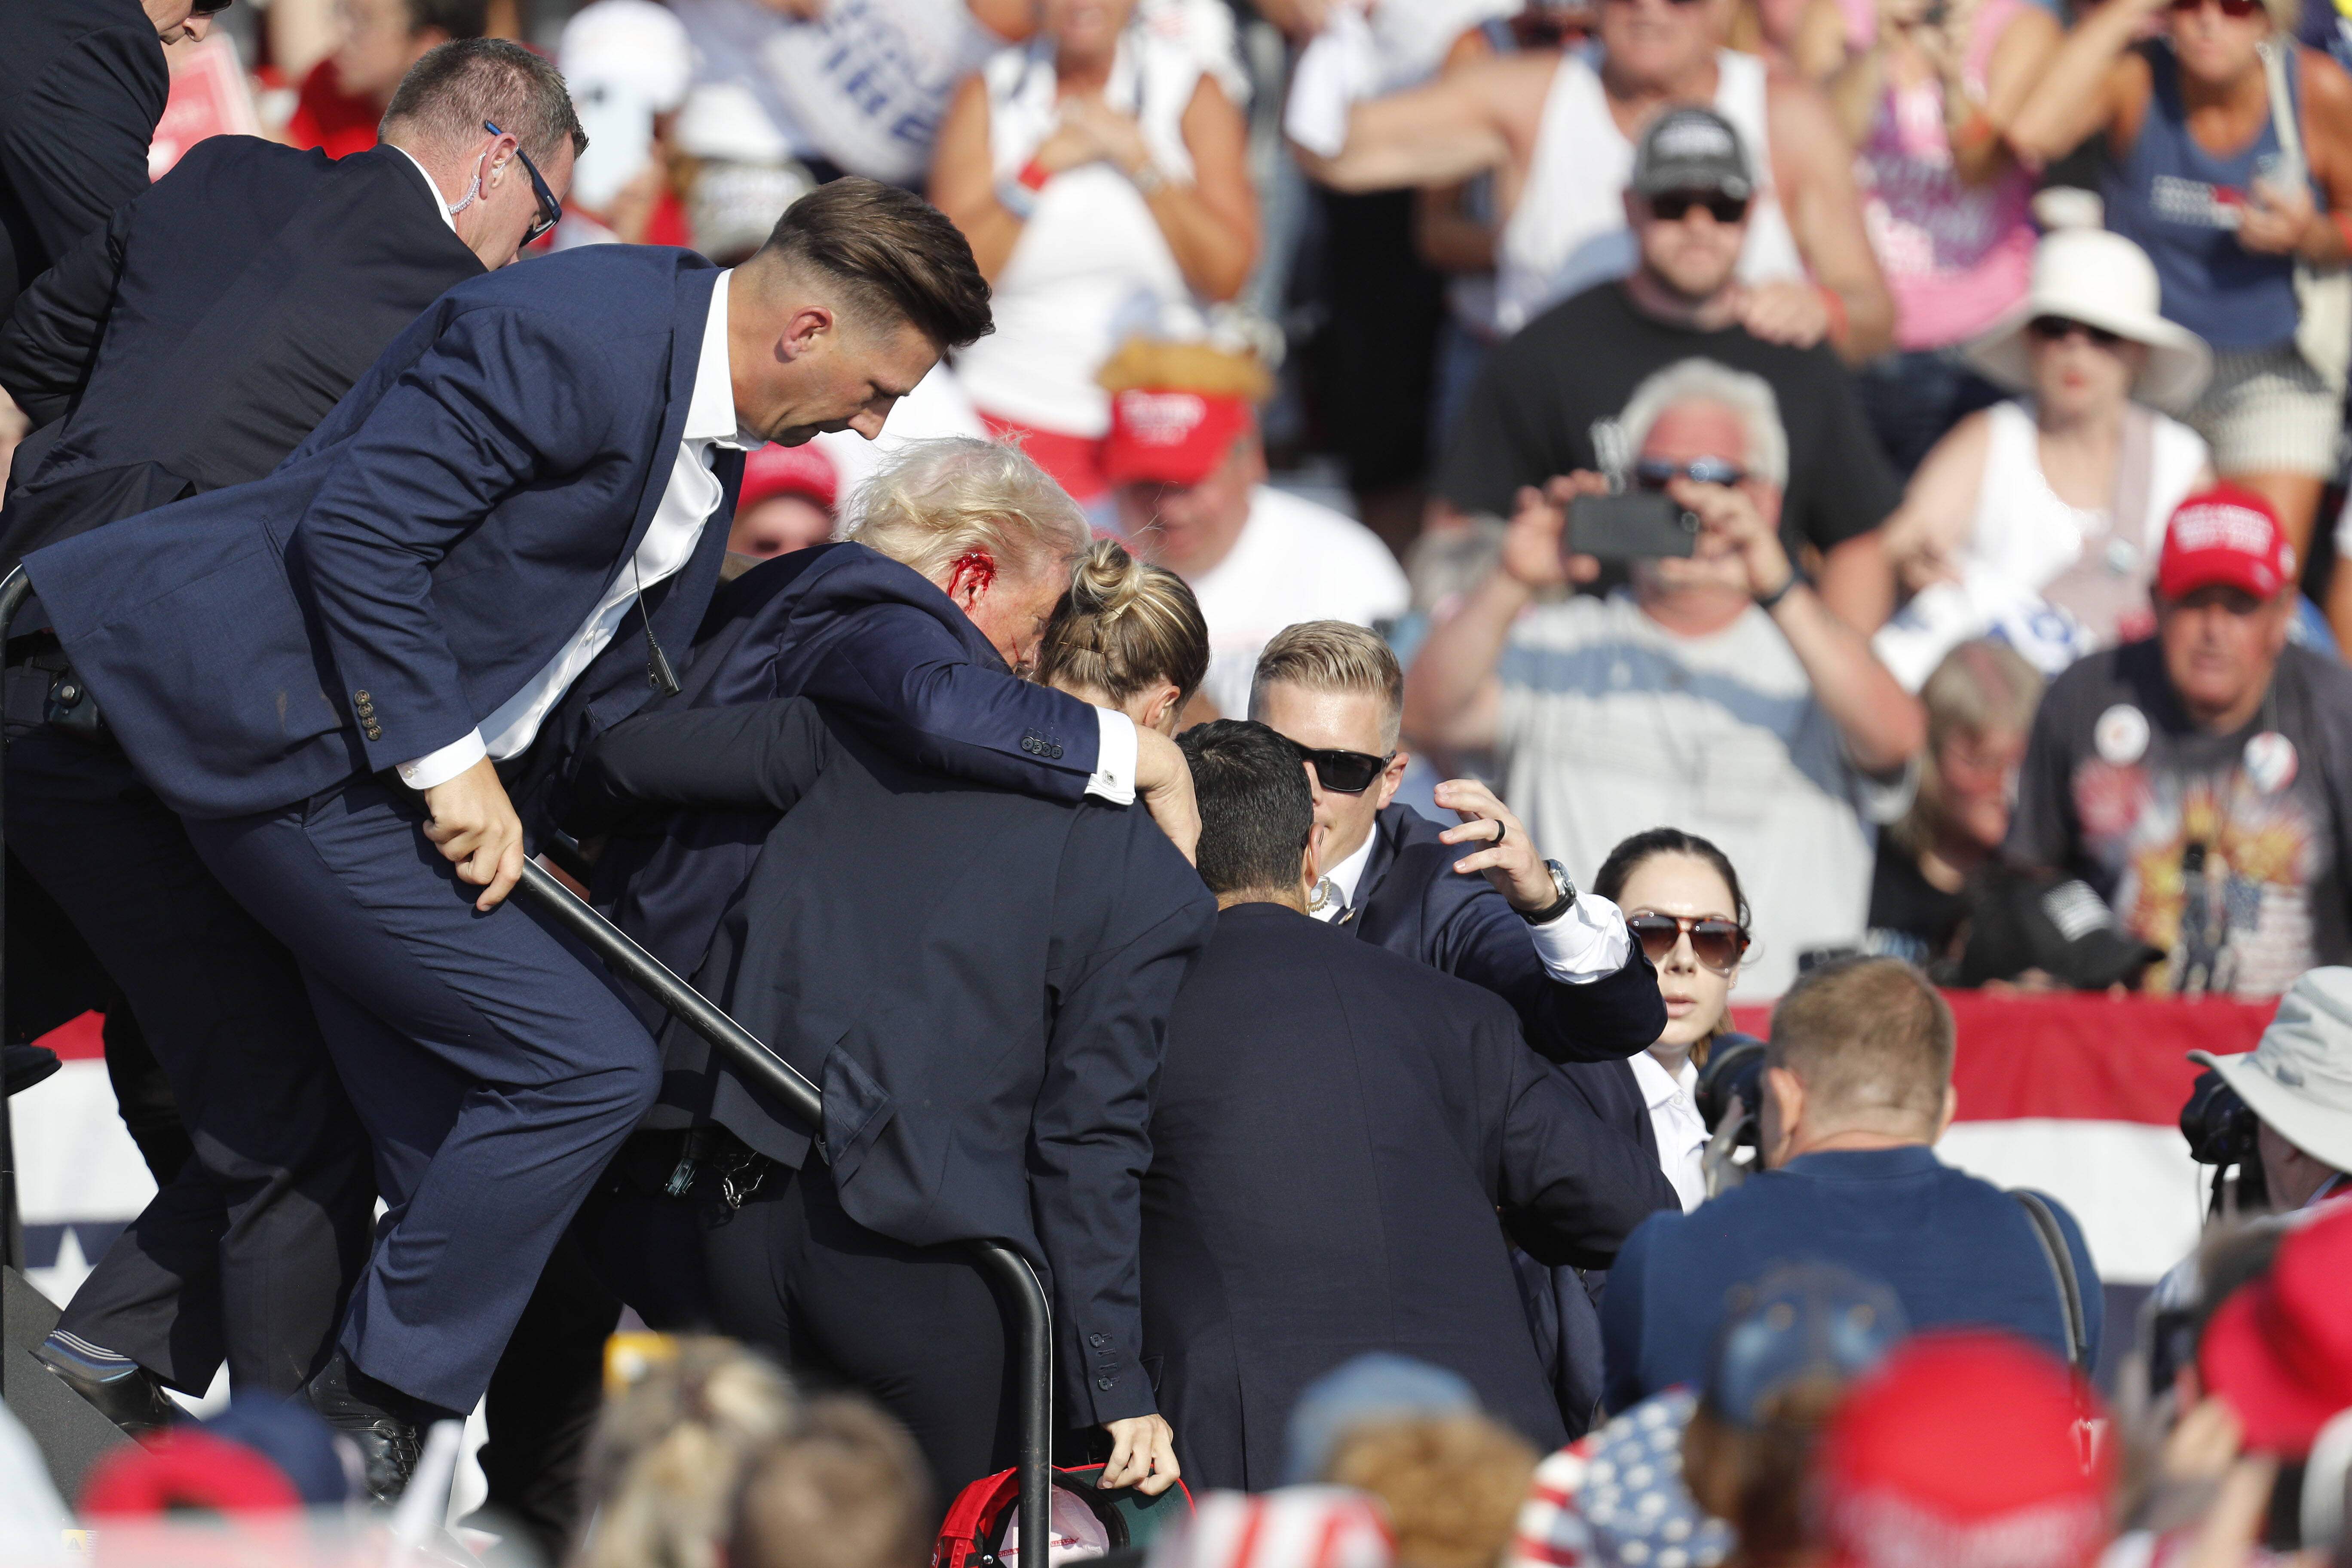 Колишнього президента США Дональда Трампа виводять зі сцени співробітники спецслужб після інциденту під час передвиборчого заходу на виставці "Батлер Фарм Шоу" в Батлері, штат Пенсильванія, США, 13 липня 2024 року.fot. PAP/DAVID MAXWELL